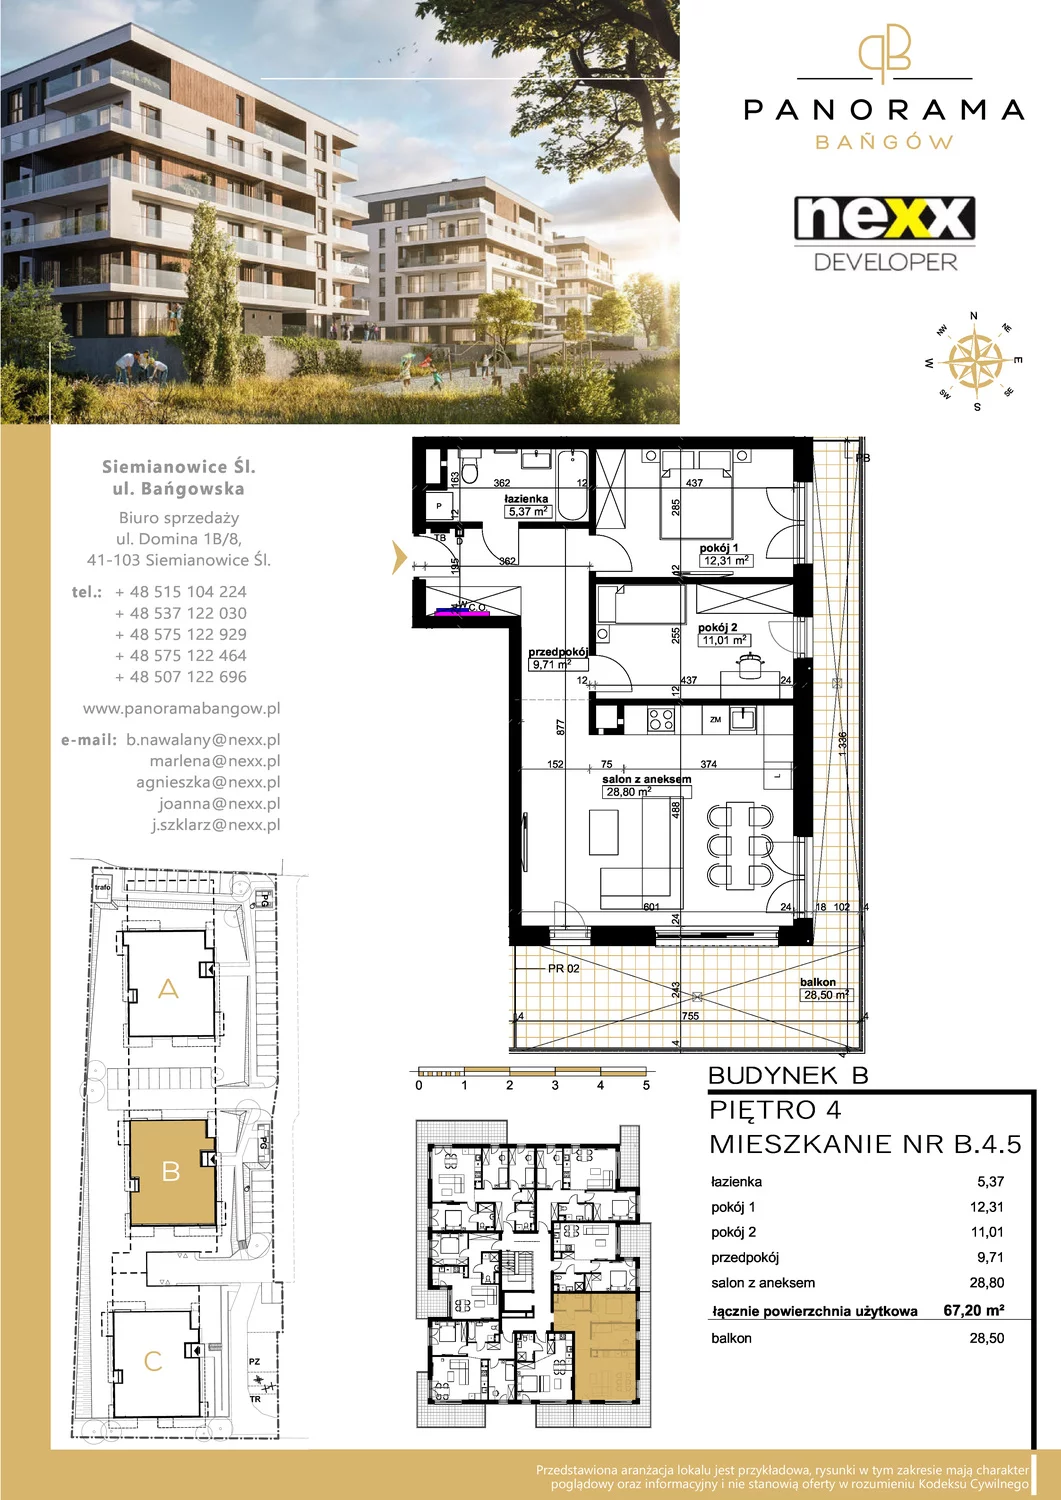 Mieszkanie 67,20 m², piętro 4, oferta nr B 4.5, Panorama Bańgów, Siemianowice Śląskie, Bańgów, ul. Bańgowska